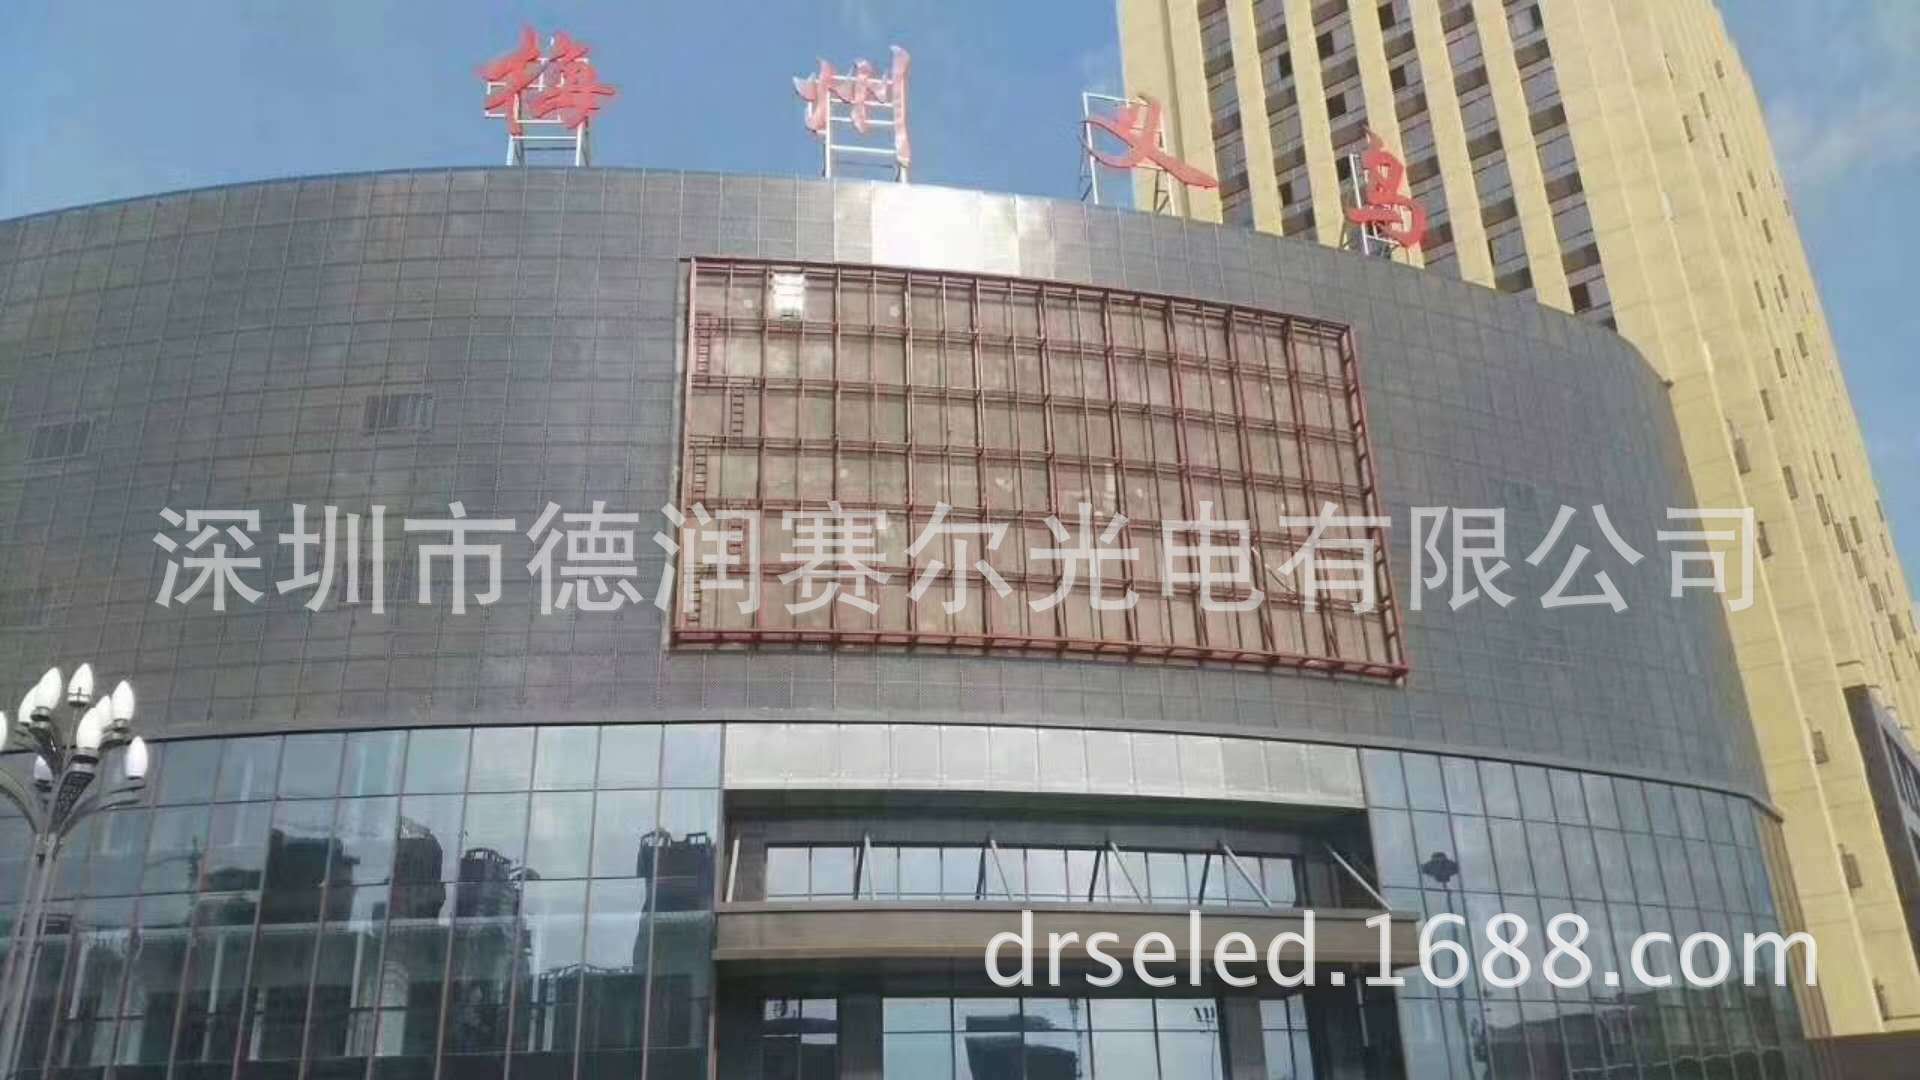 上海p10LED显示屏 户外全彩高清机场车载广告租赁厂家电子大屏幕